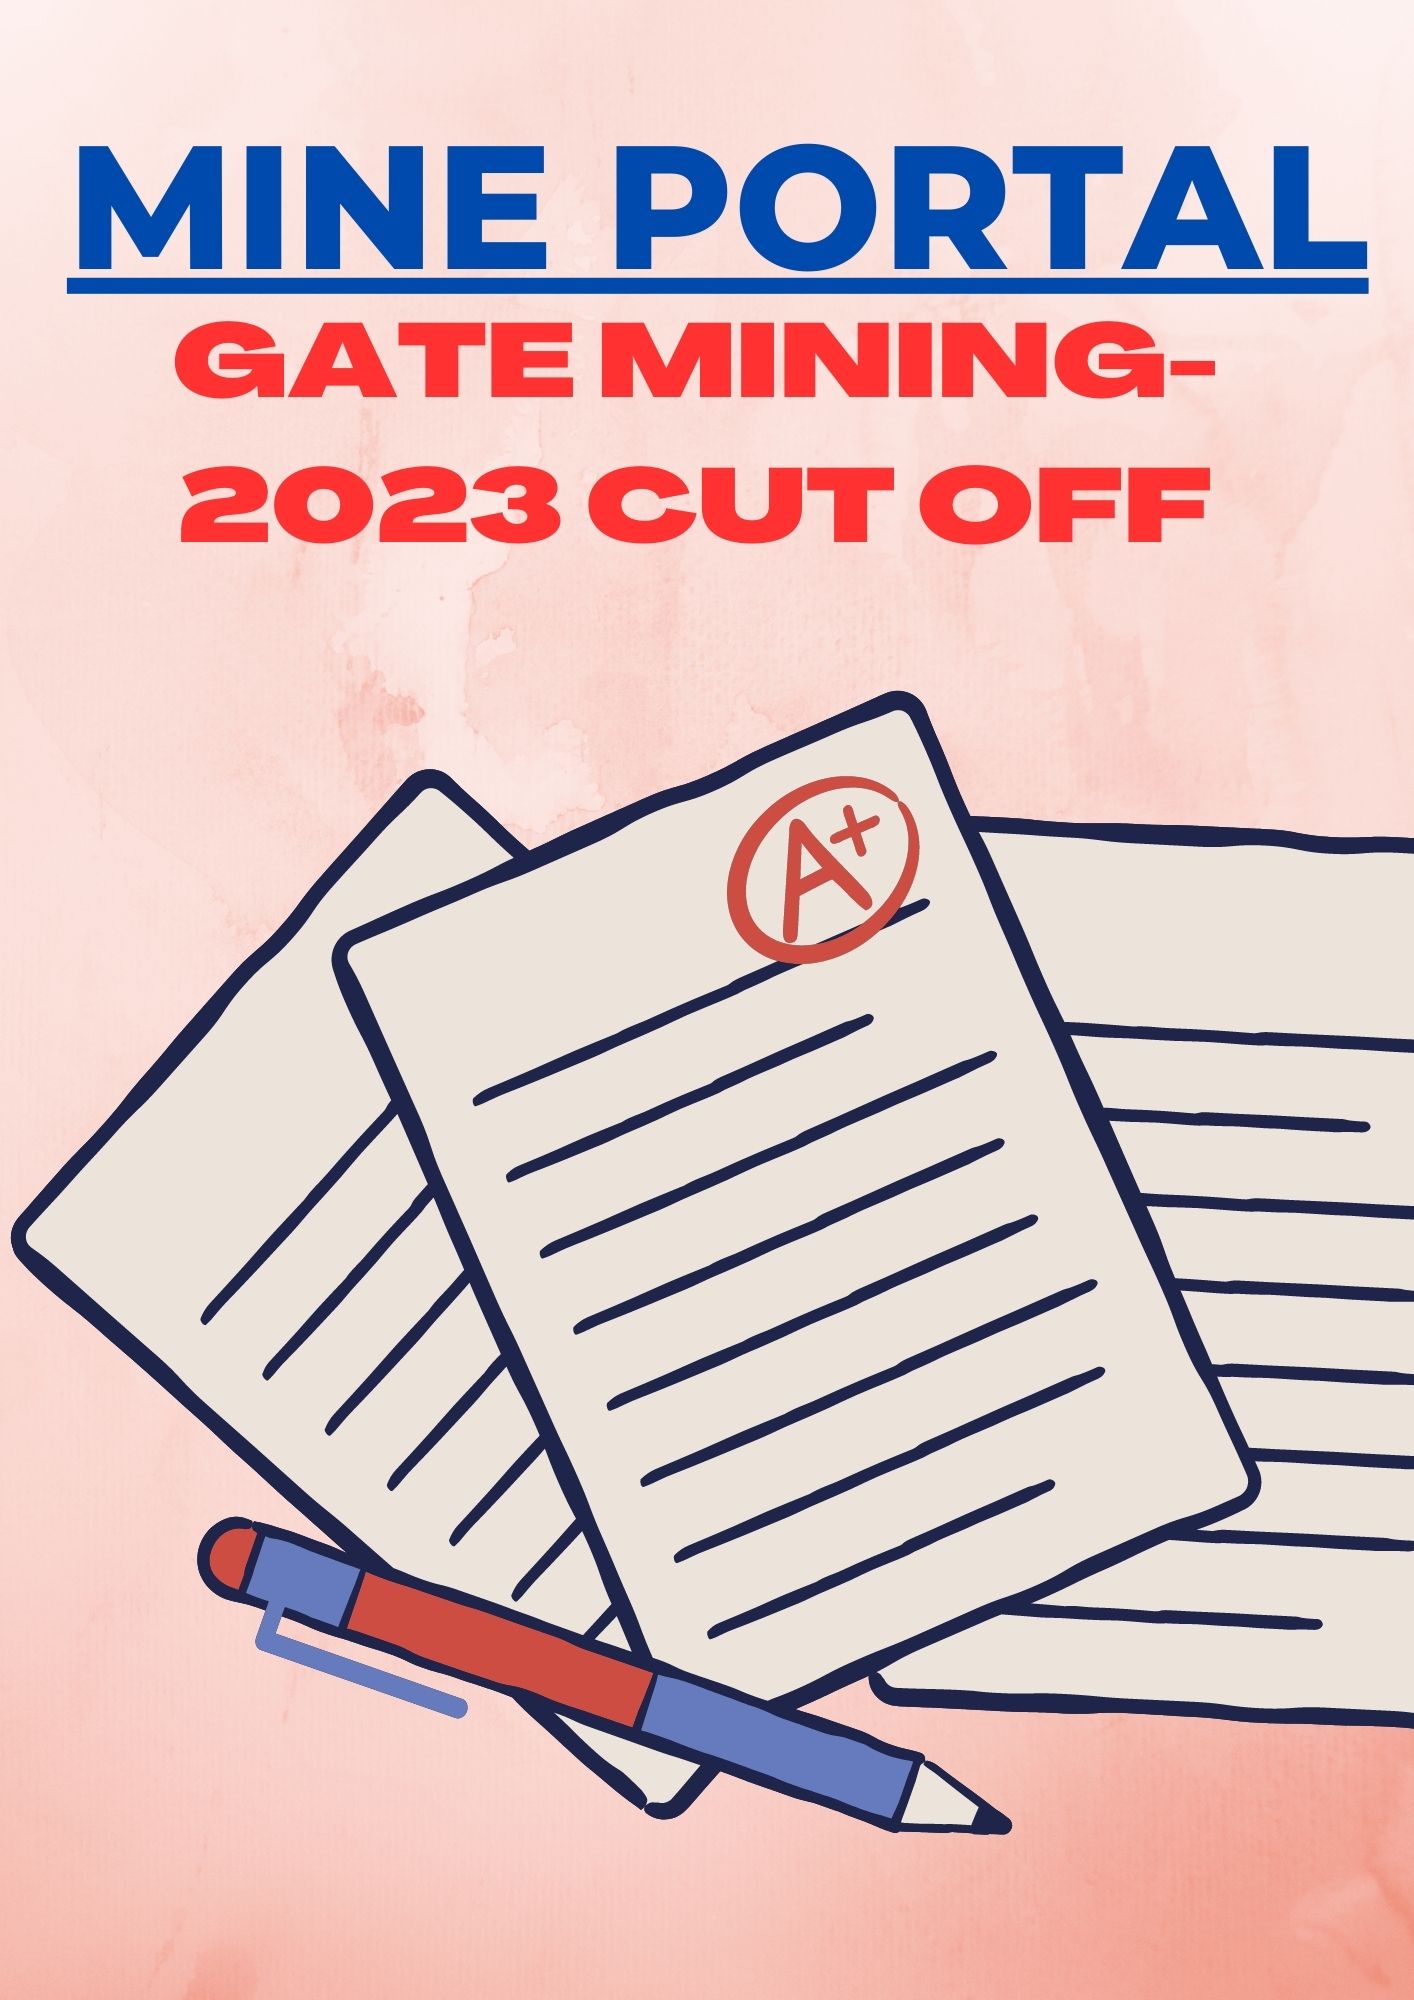 GATE MINING 2023 CUT OFF